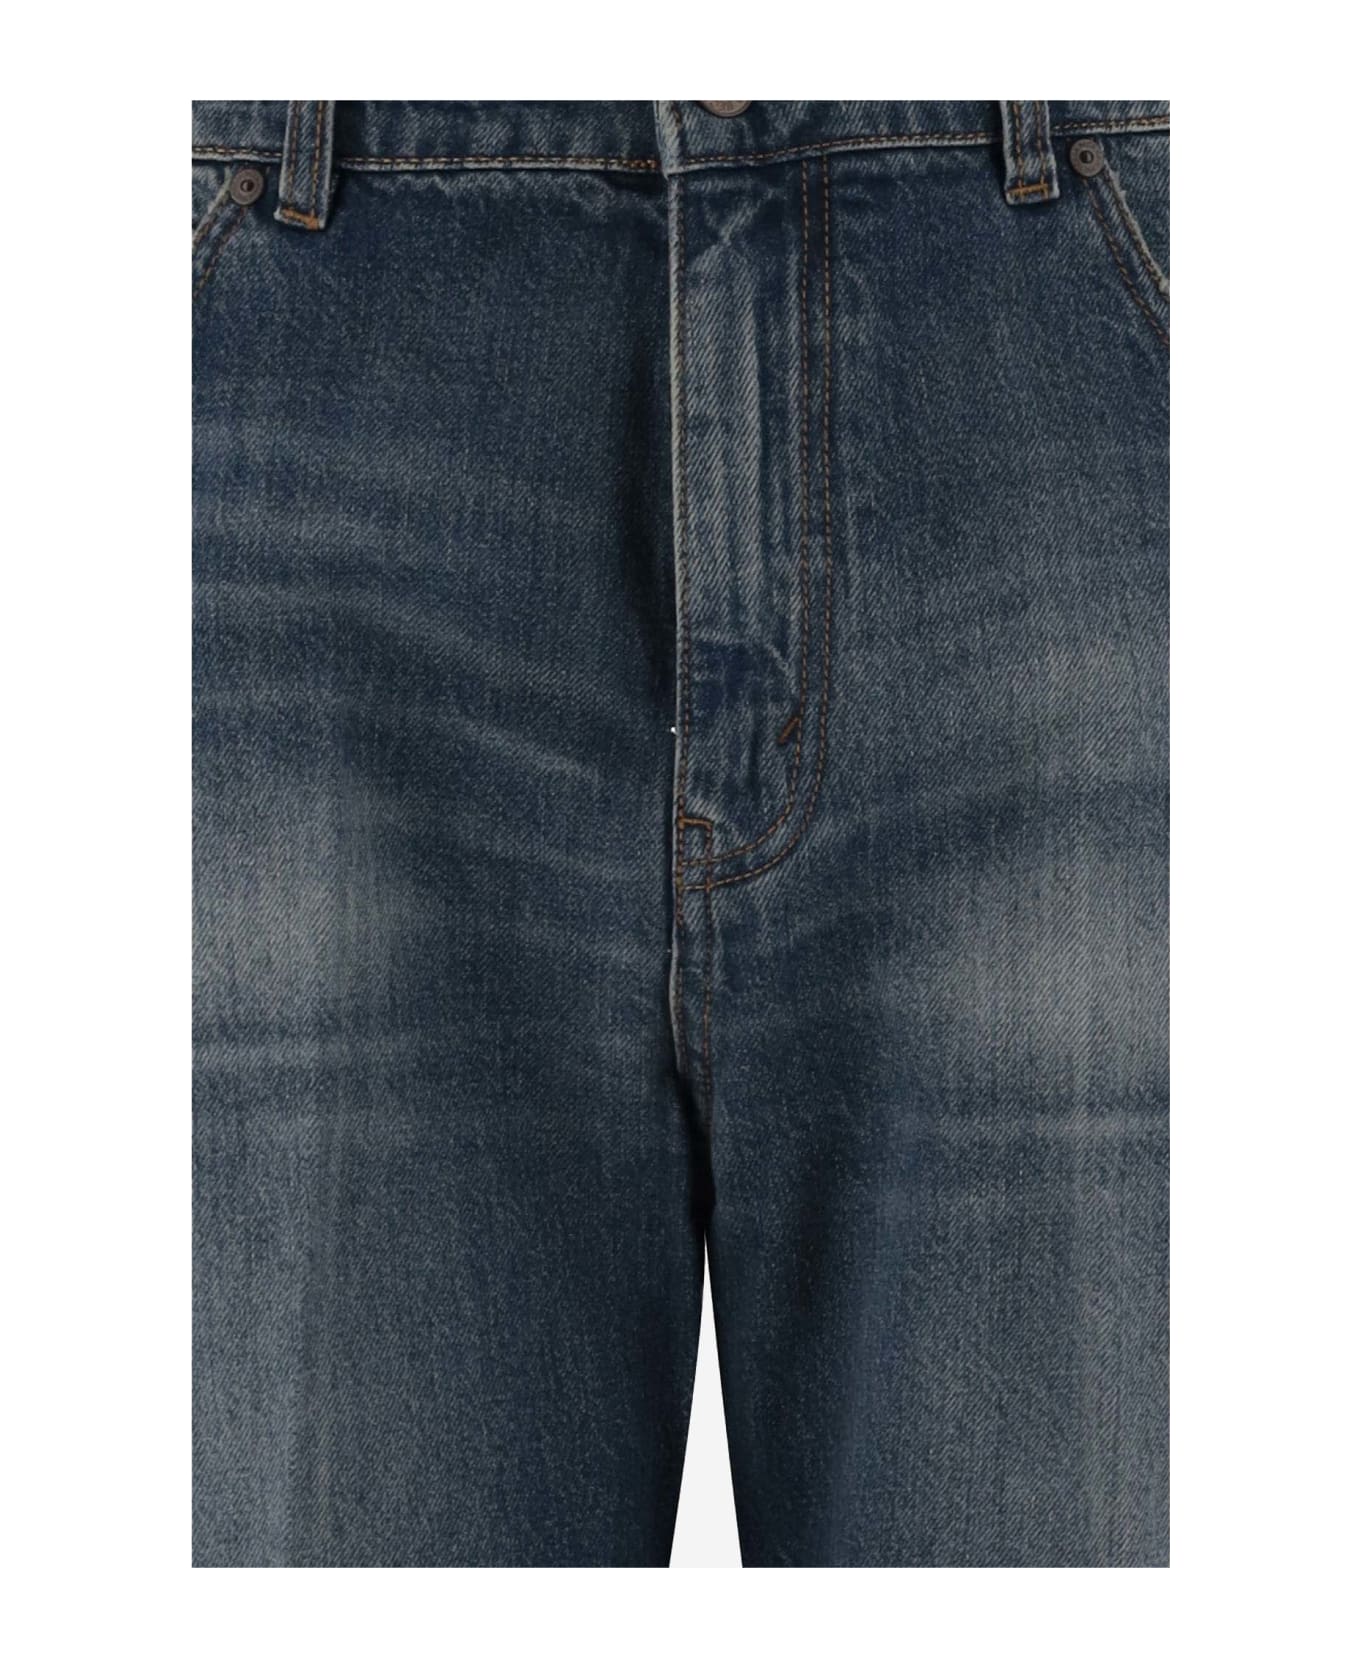 Victoria Beckham Cotton Denim Jeans - Denim デニム